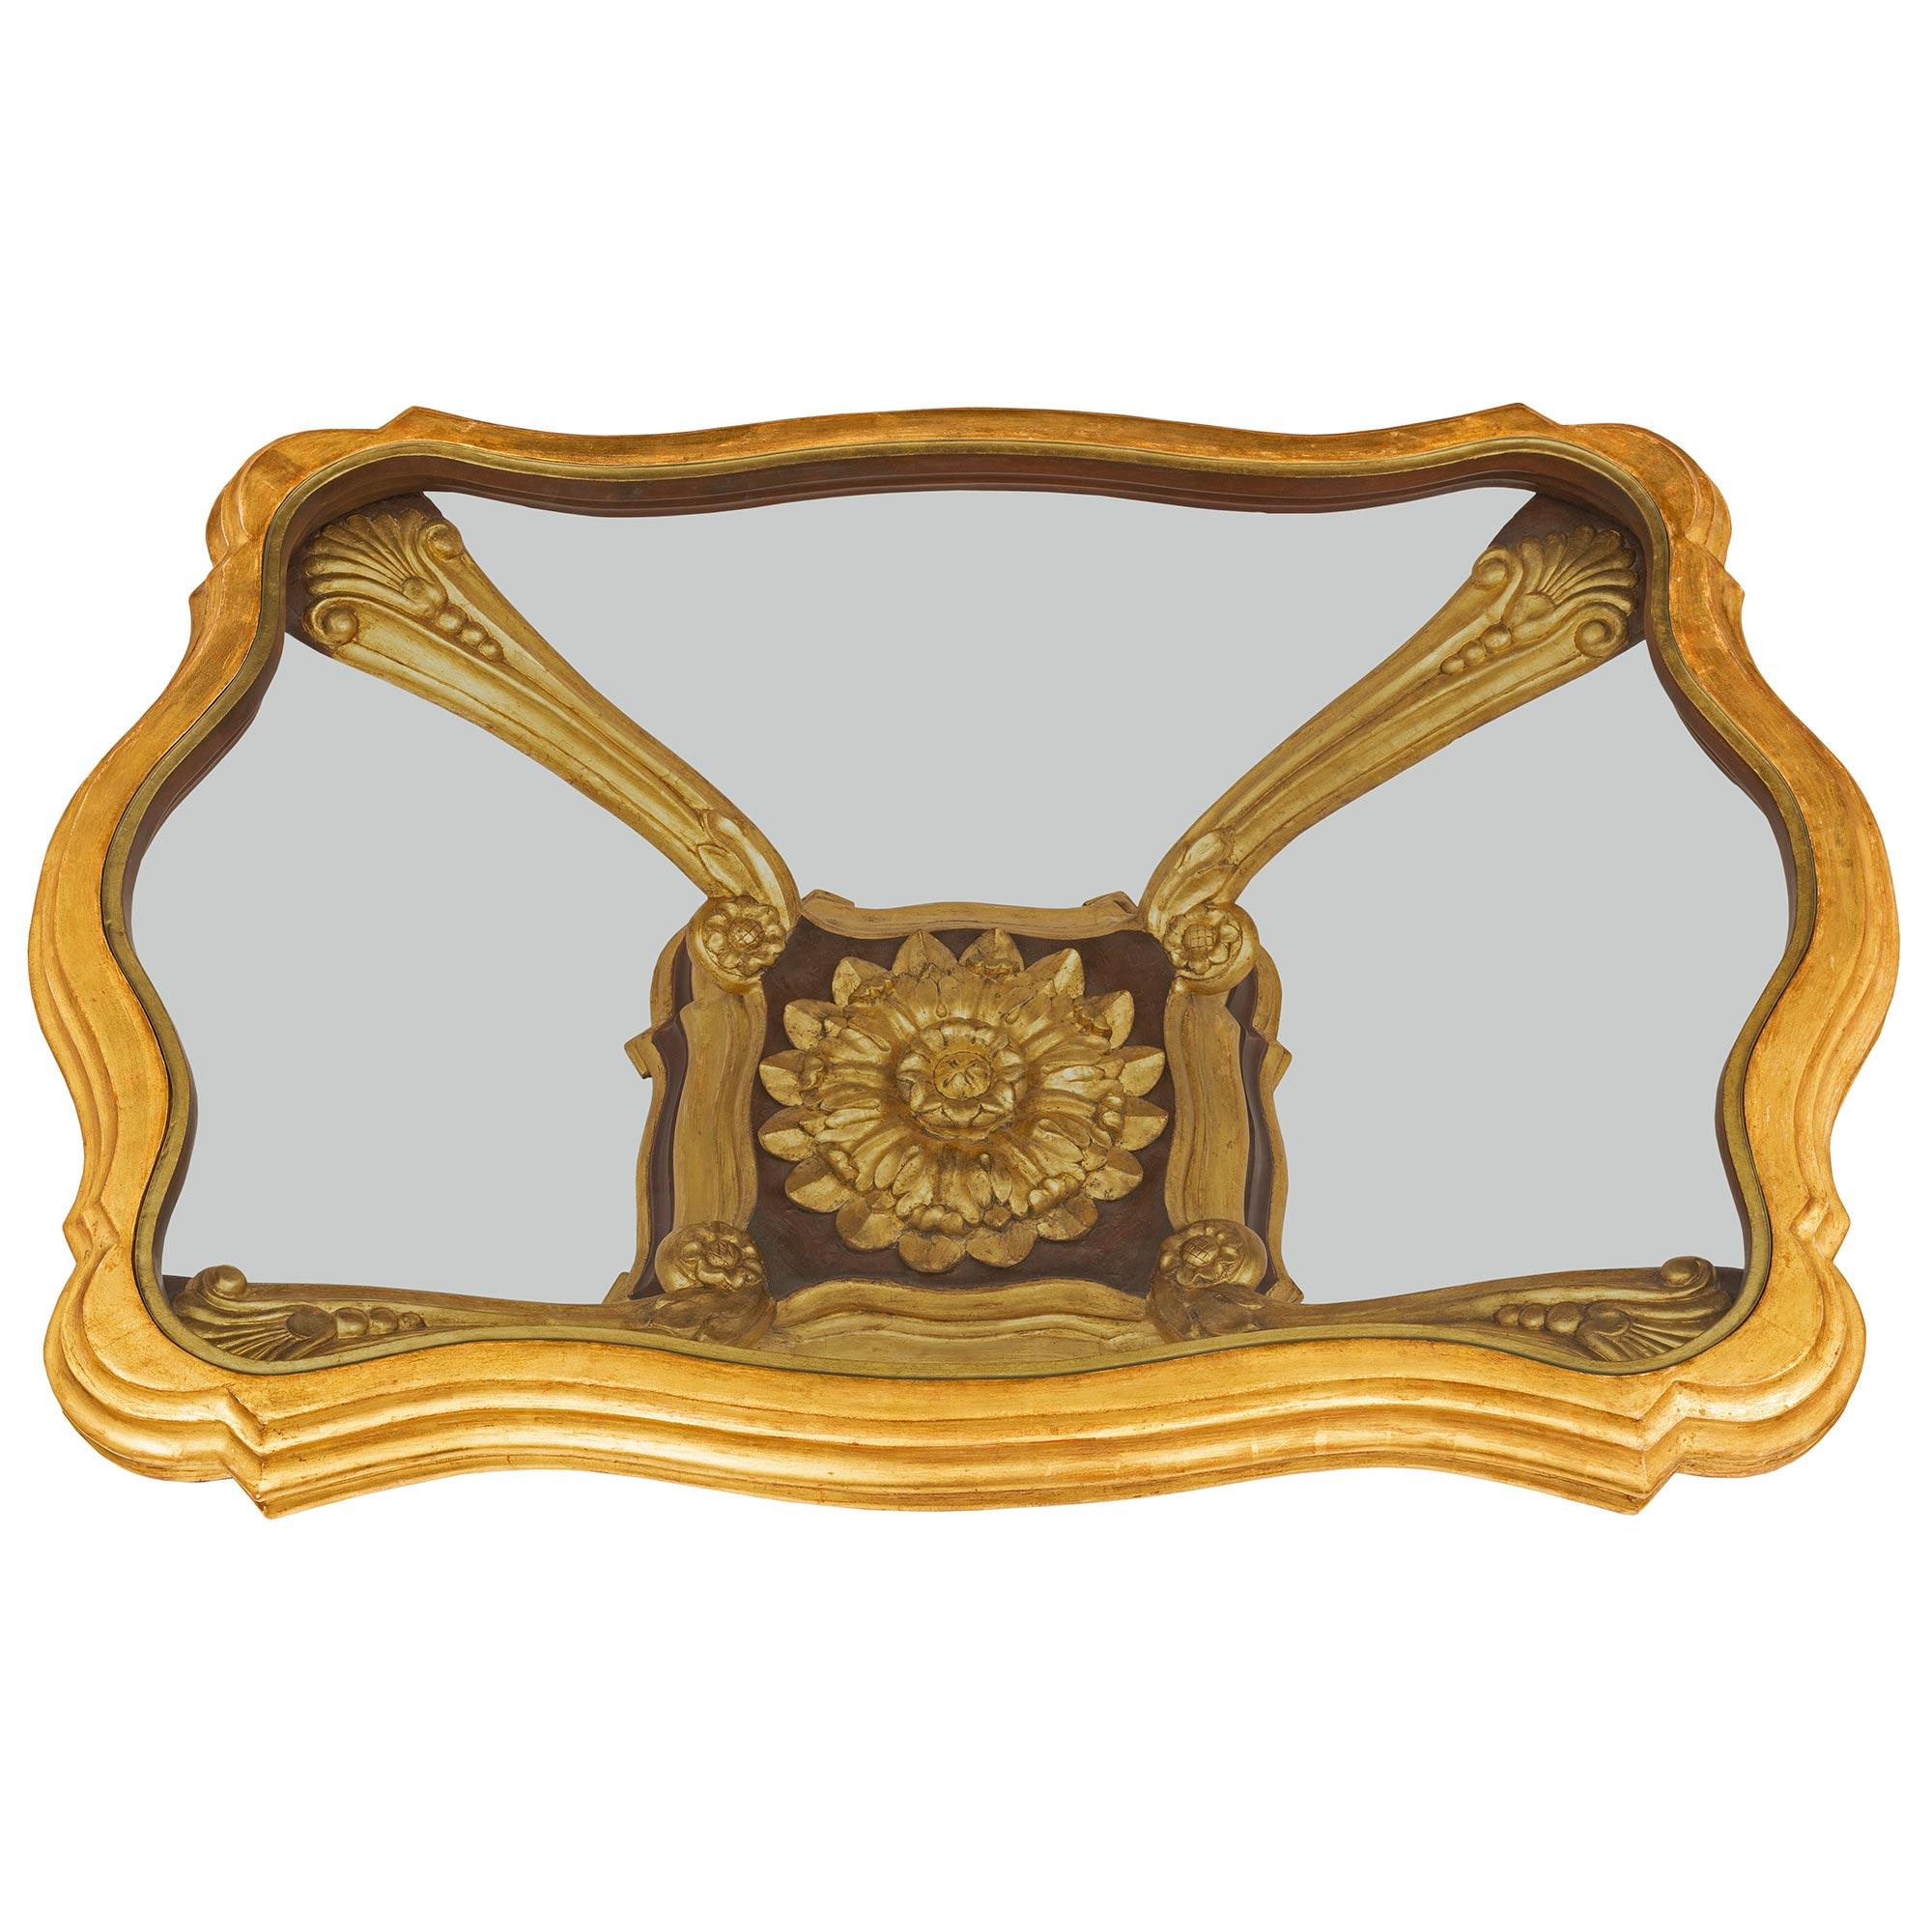 Une belle et extrêmement décorative table basse baroque italienne du début du 19ème siècle en bois doré, polychrome et verre. La table est surélevée par une base élégamment incurvée avec un superbe motif marbré en escalier et une belle bande